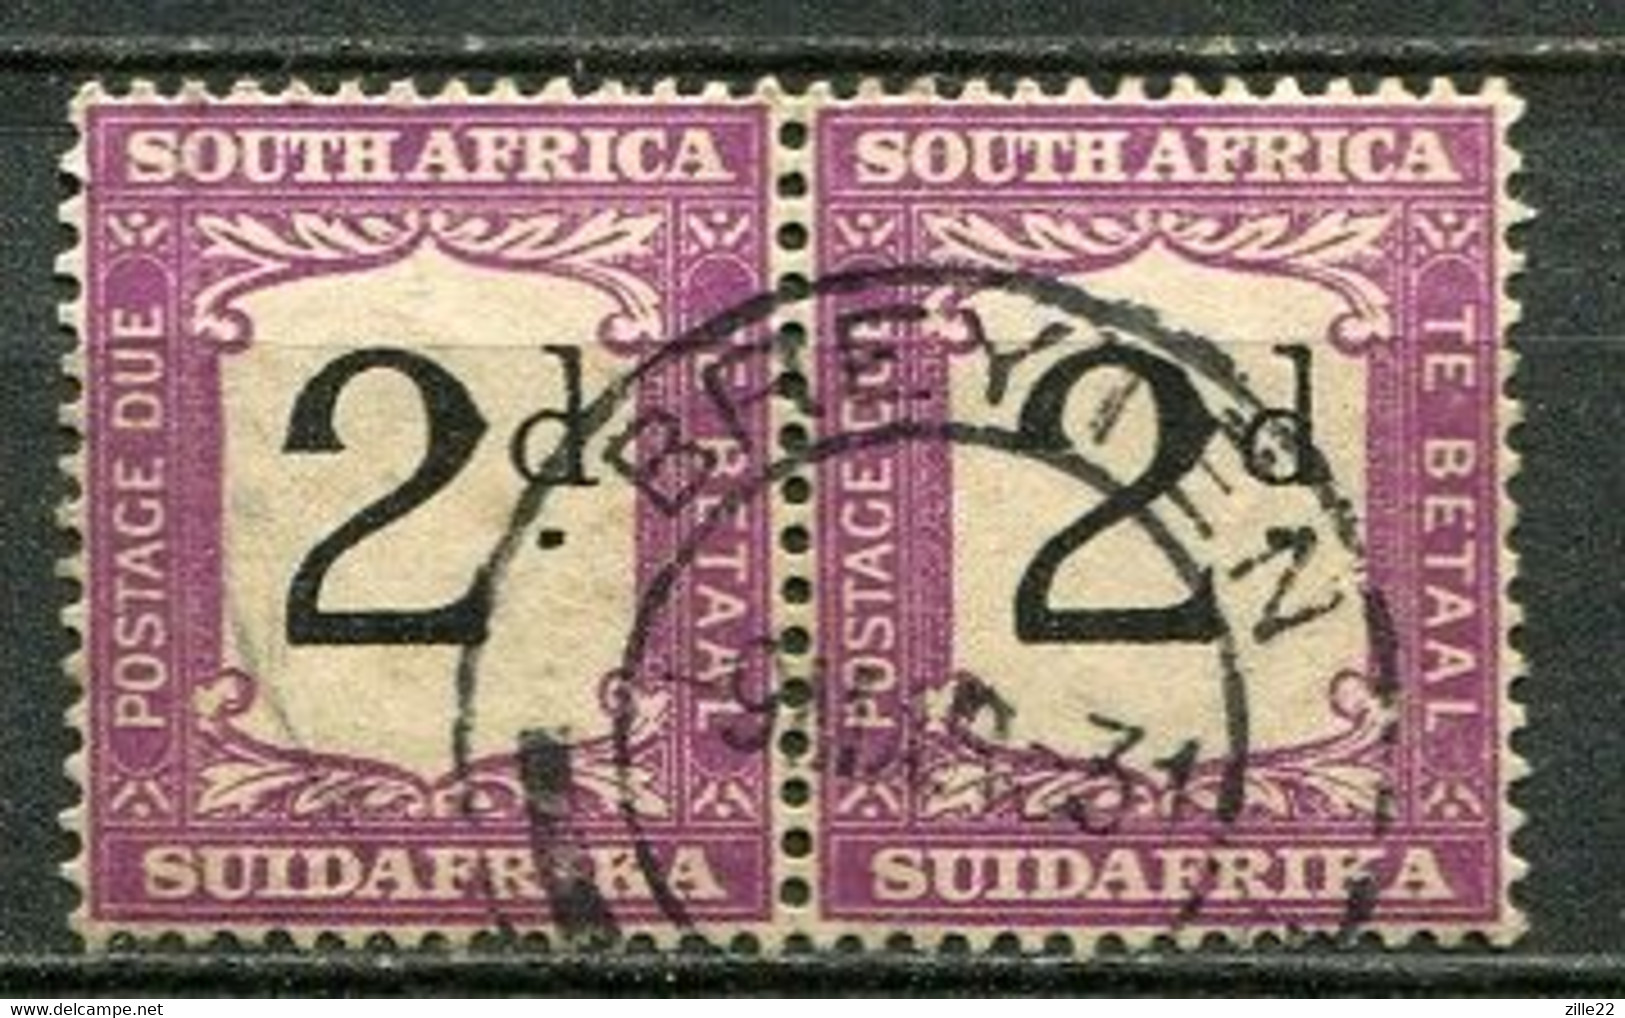 Union Of South Africa Postage Due, Südafrika Portomarken Mi# 19  Gestempelt/used - Segnatasse